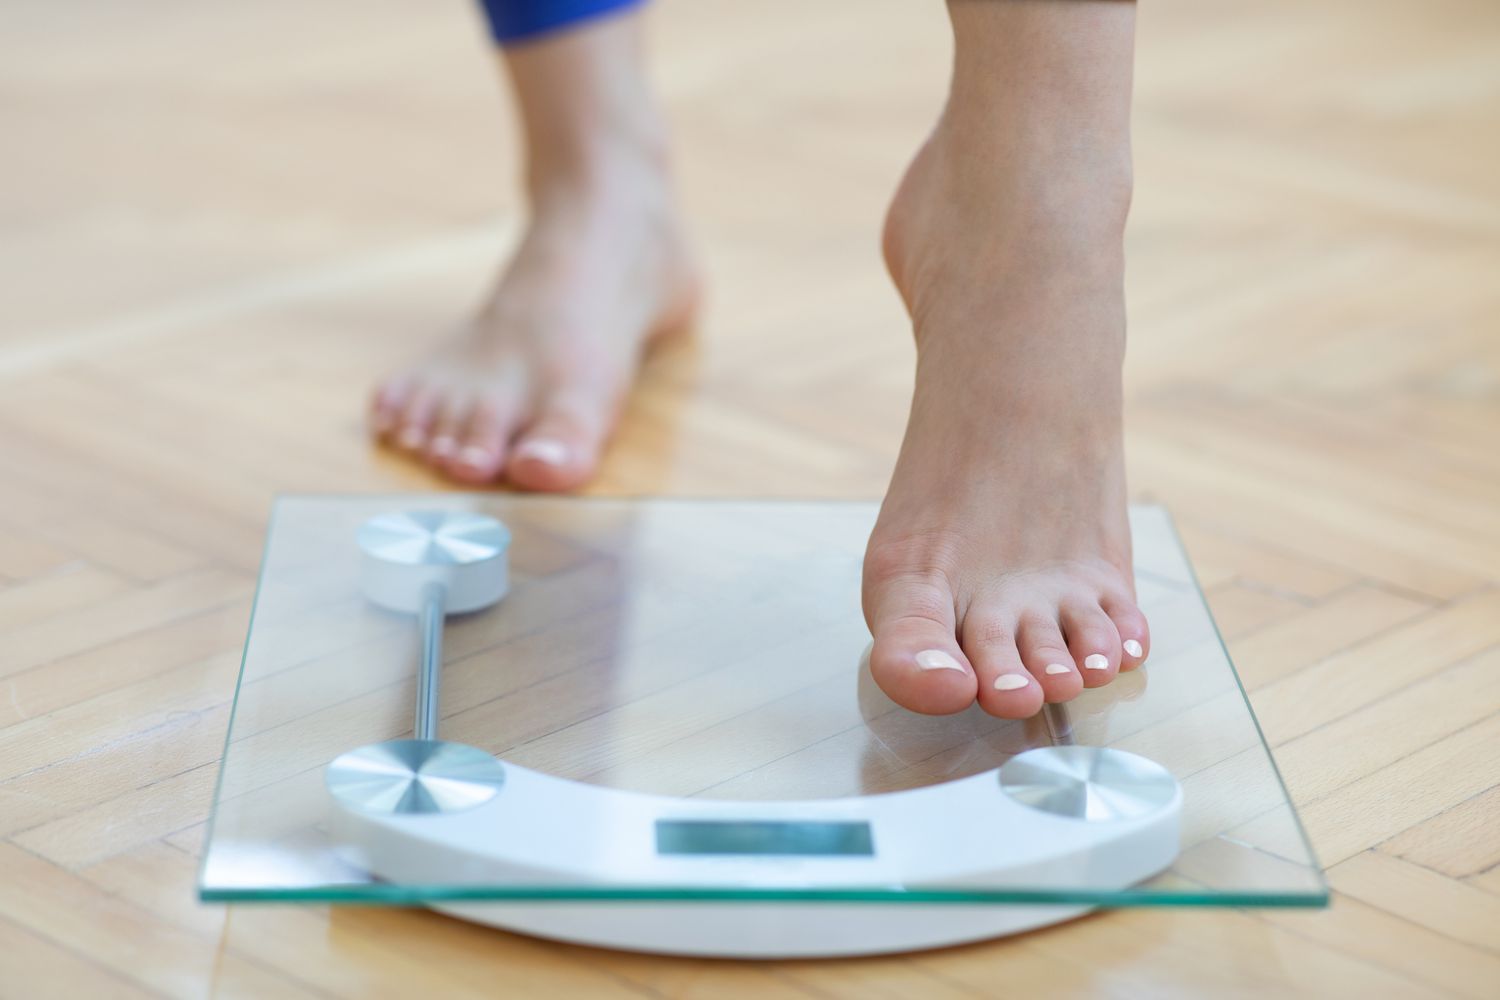 Un estudio internacional sobre el estigma del peso revela problemas mundiales